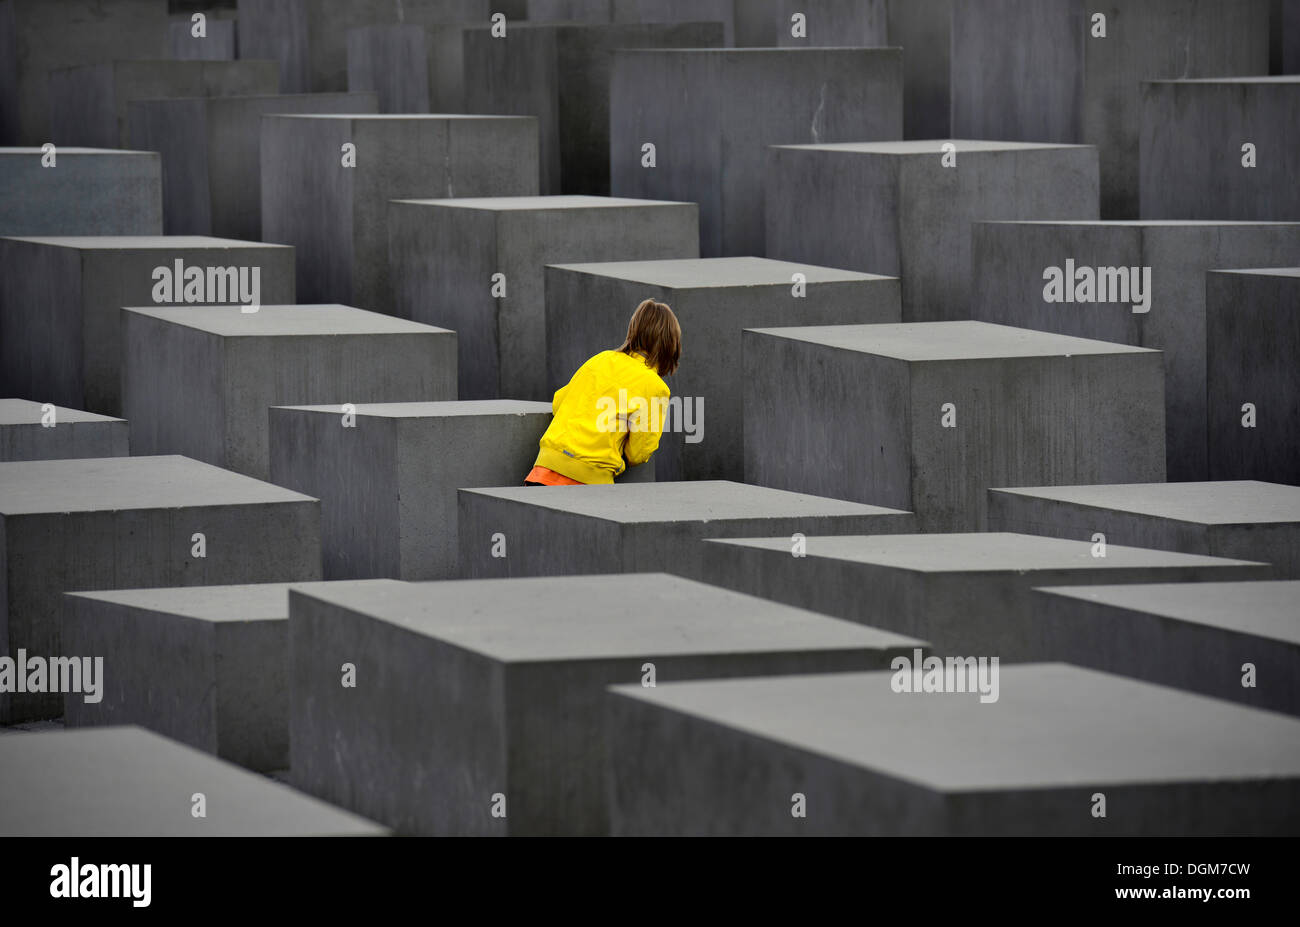 Denkmal für die ermordeten Juden Europas, spielendes Kind Versteckspiel an das Holocaust-Mahnmal, entworfen vom Architekten Peter Stockfoto